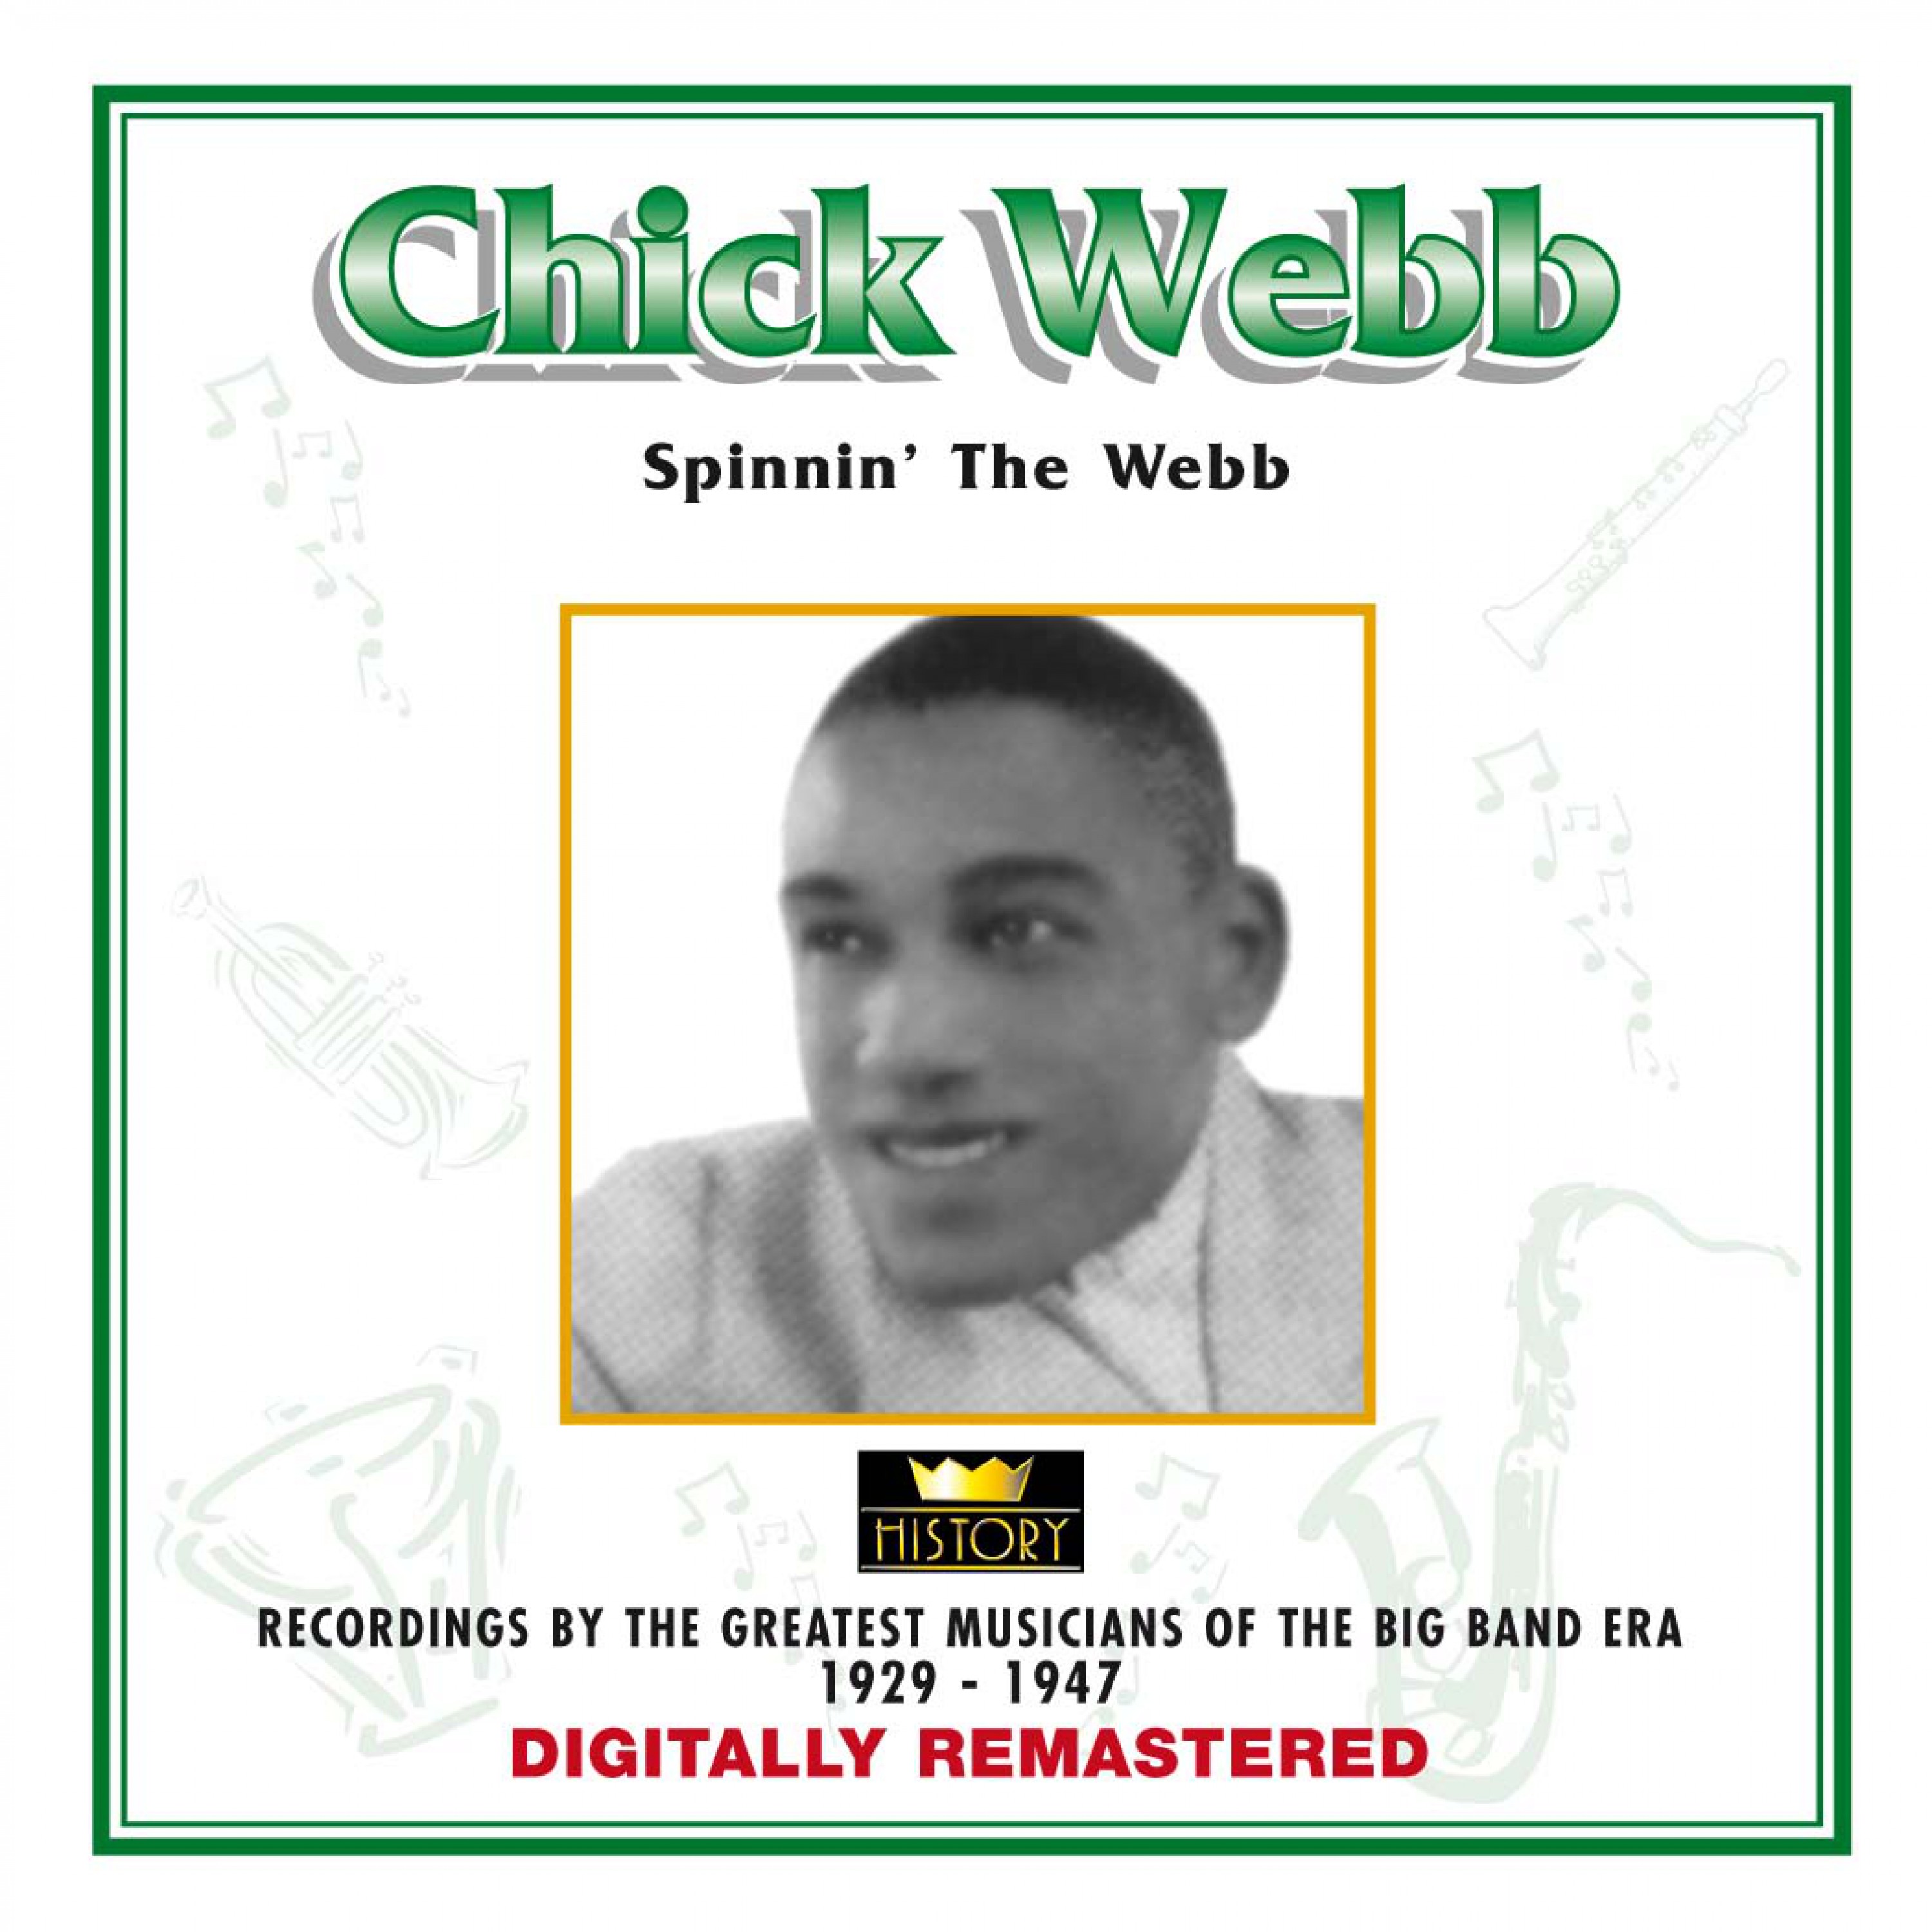 Chick Webb - Spinnin' the Webb